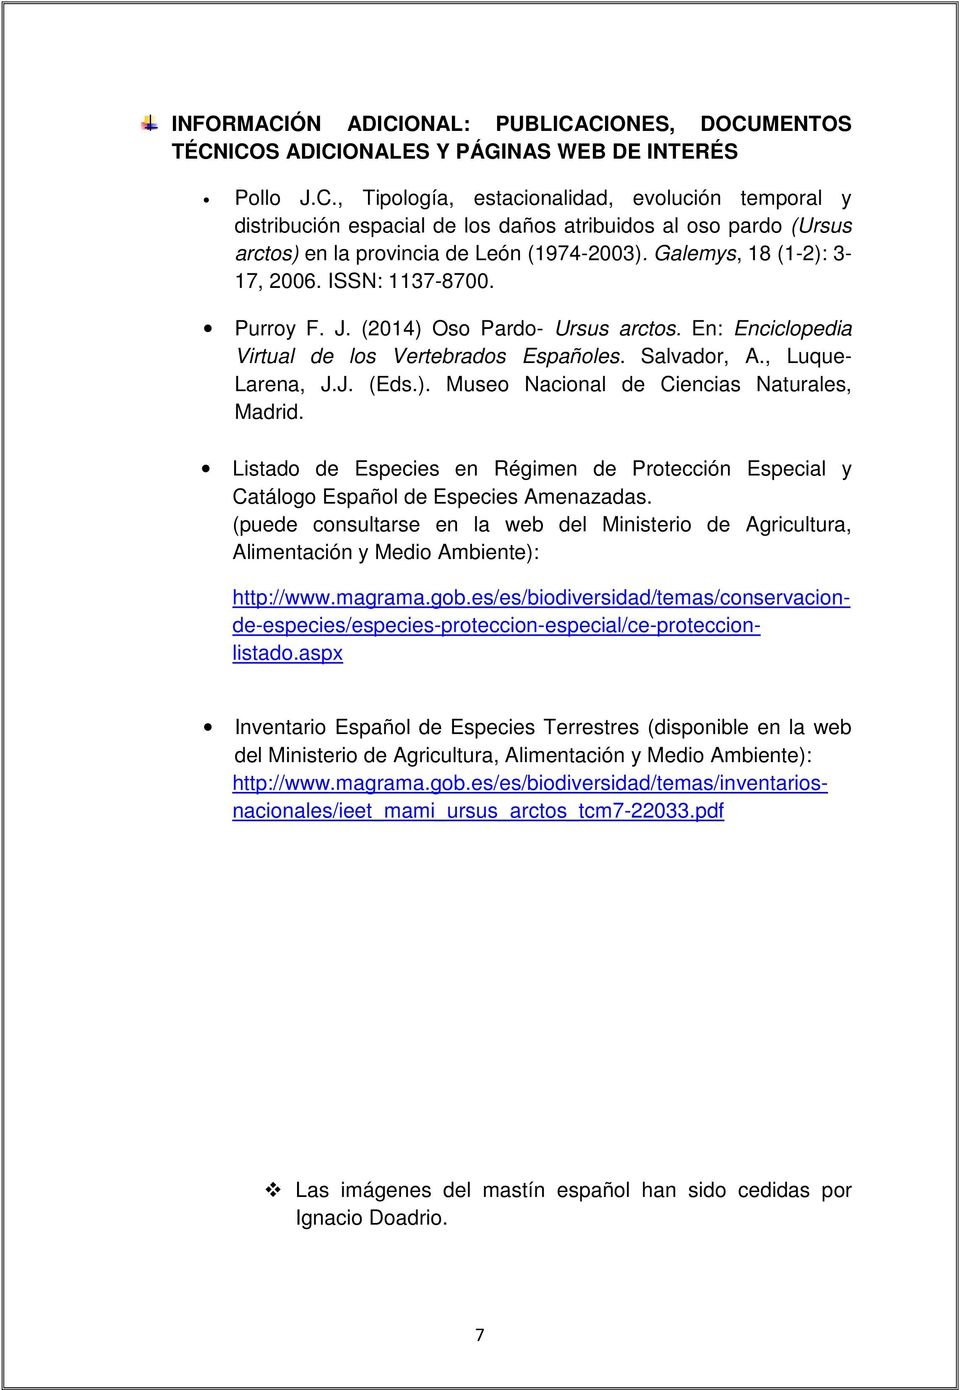 Listado de Especies en Régimen de Protección Especial y Catálogo Español de Especies Amenazadas. (puede consultarse en la web del Ministerio de Agricultura, Alimentación y Medio Ambiente): http://www.